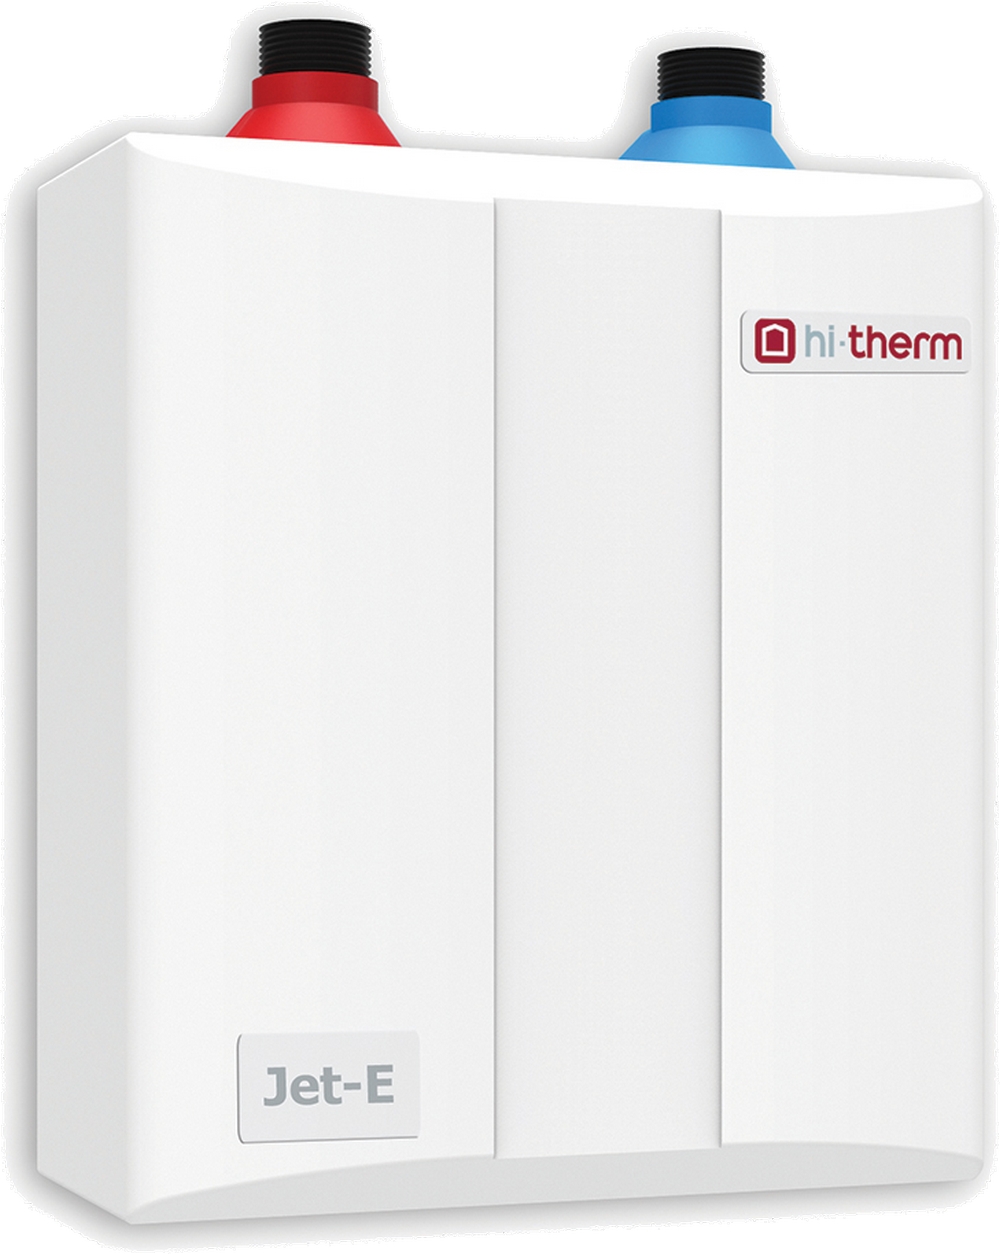 Отзывы проточный водонагреватель Hi-Therm JET-E 4.0 в Украине